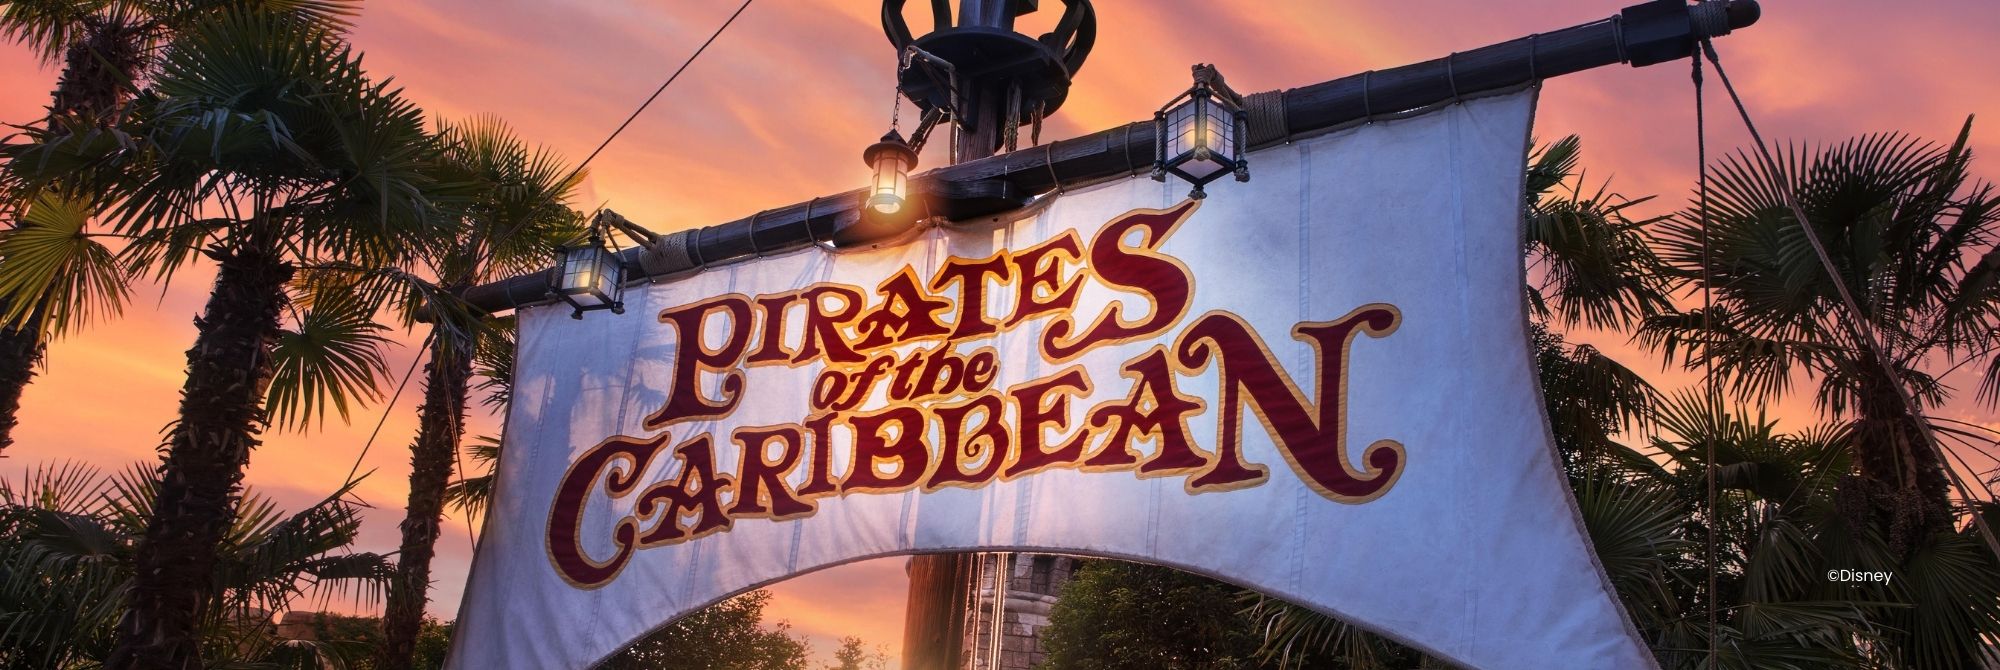 Wit zeil aan een mast met Pirates of the Caribbean in rode letters